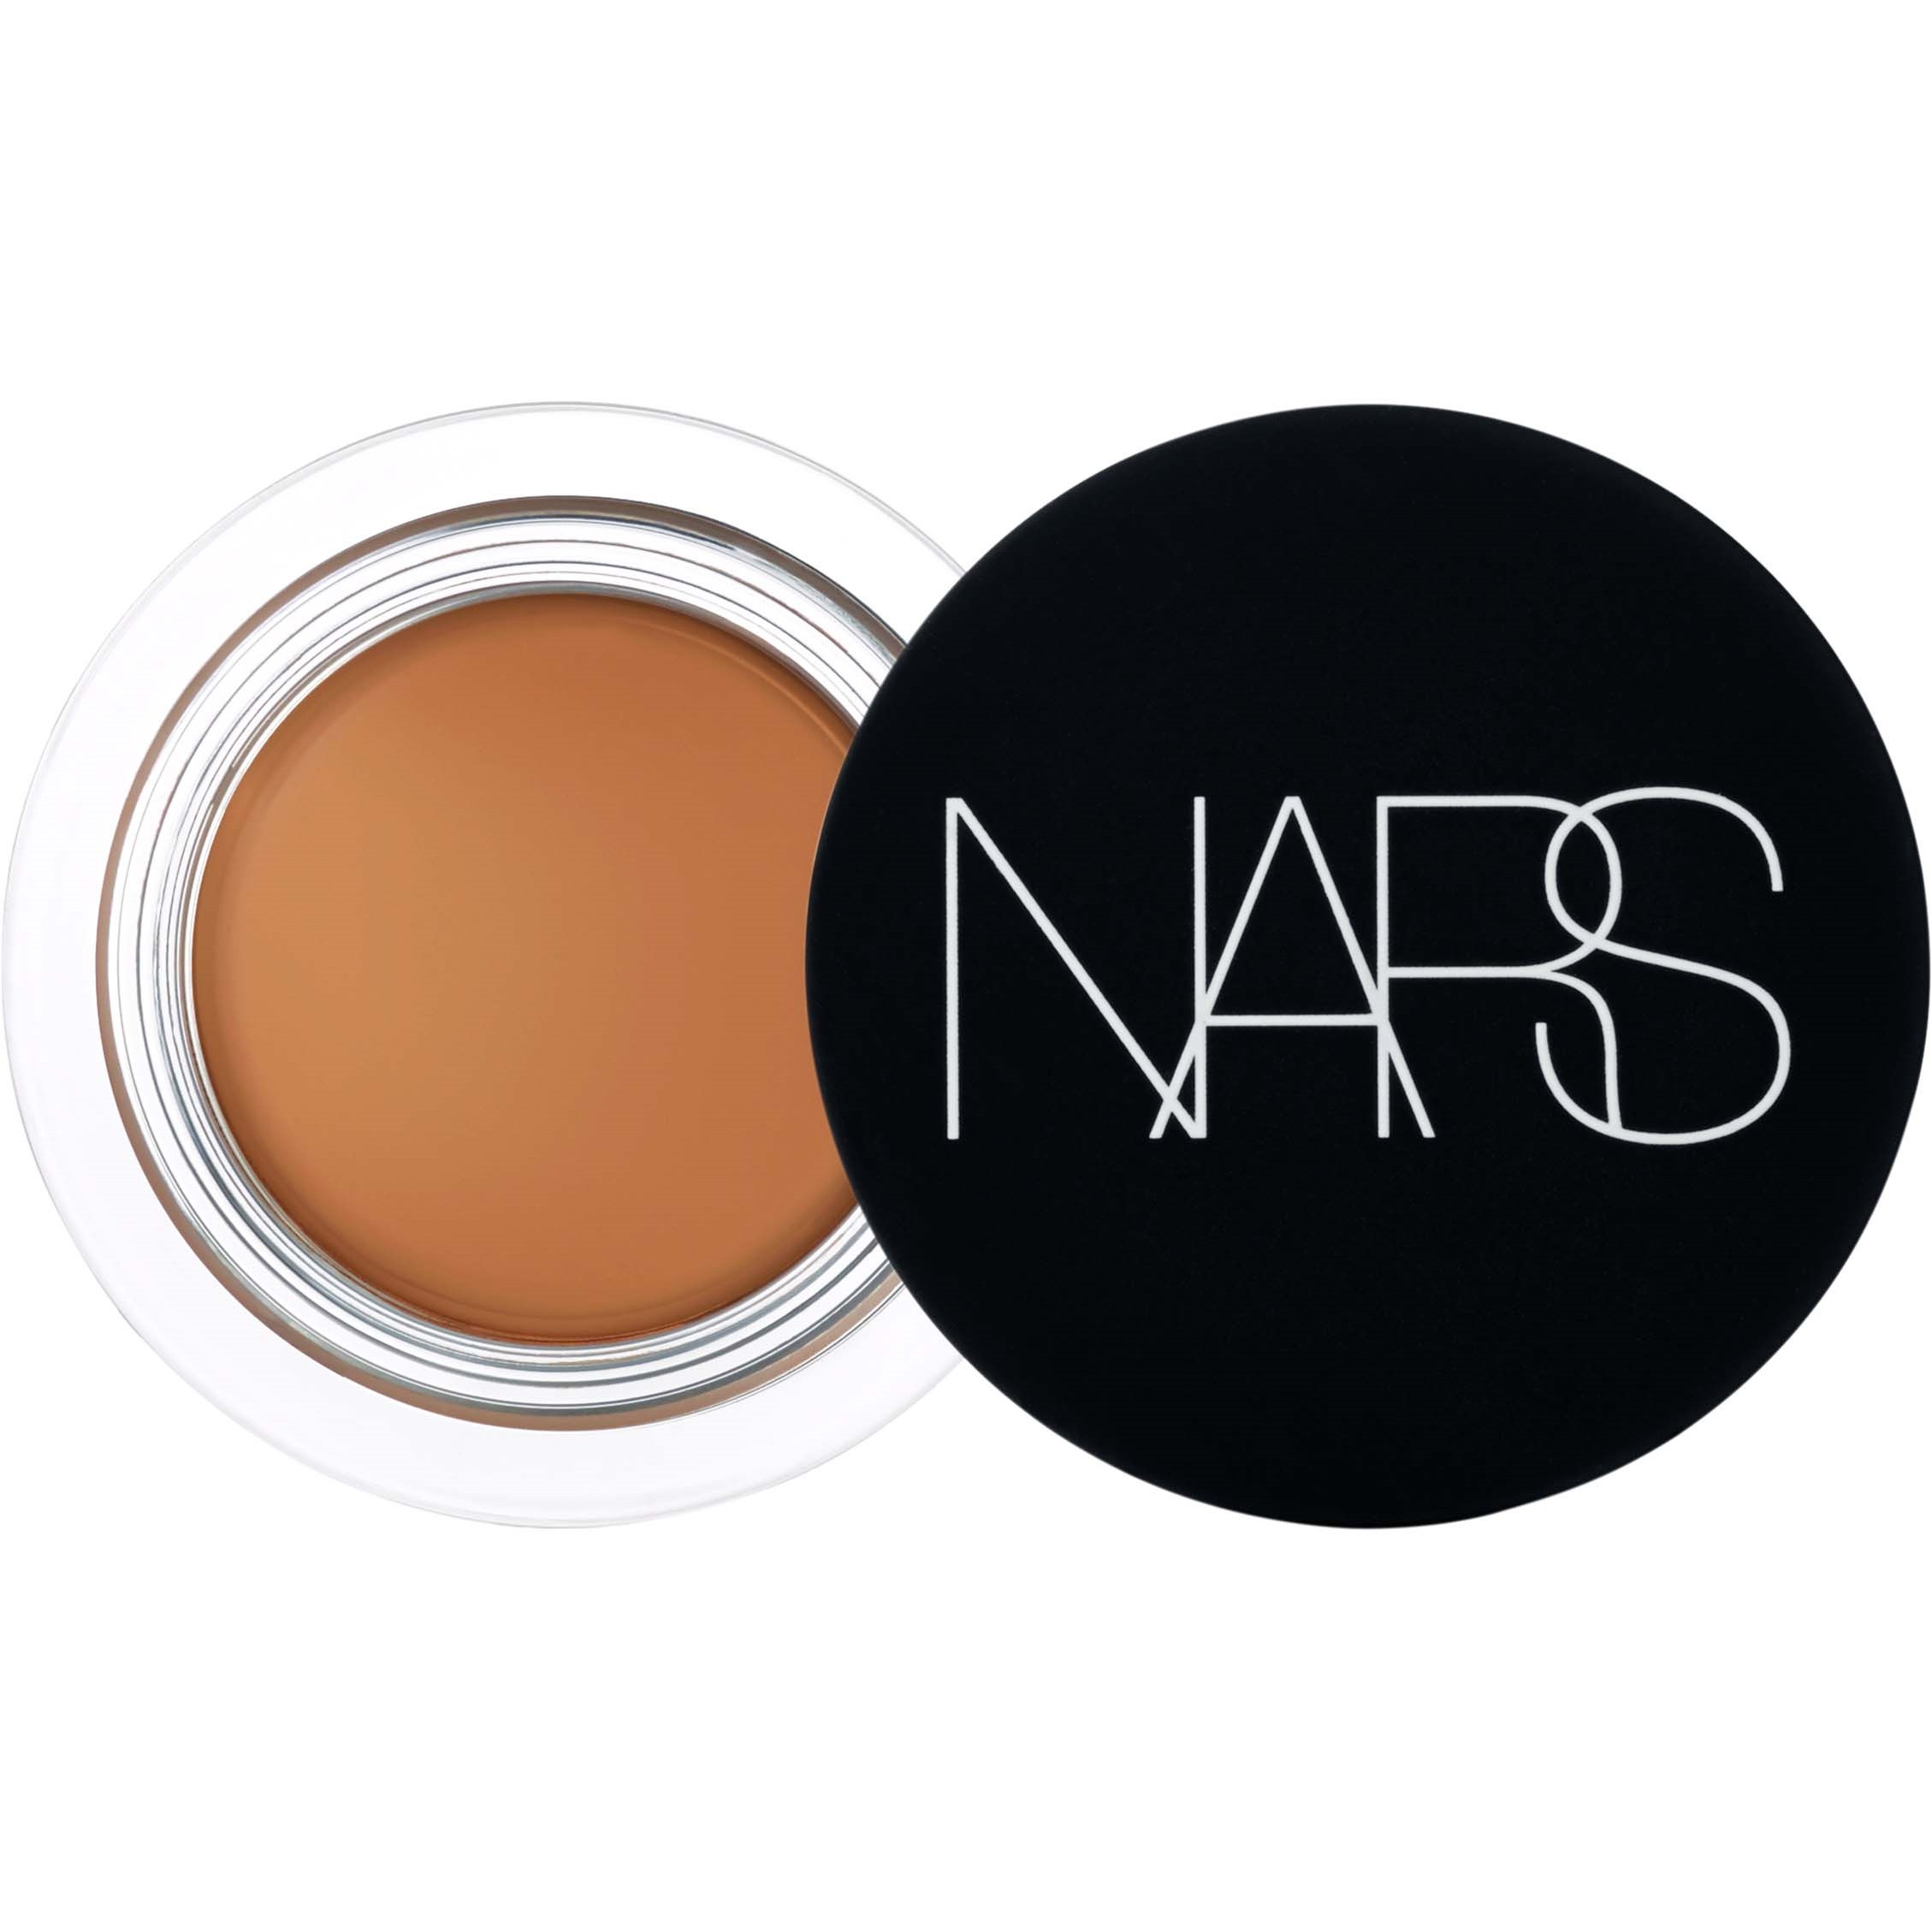 NARS Soft Matte Complete Concealer Walnut